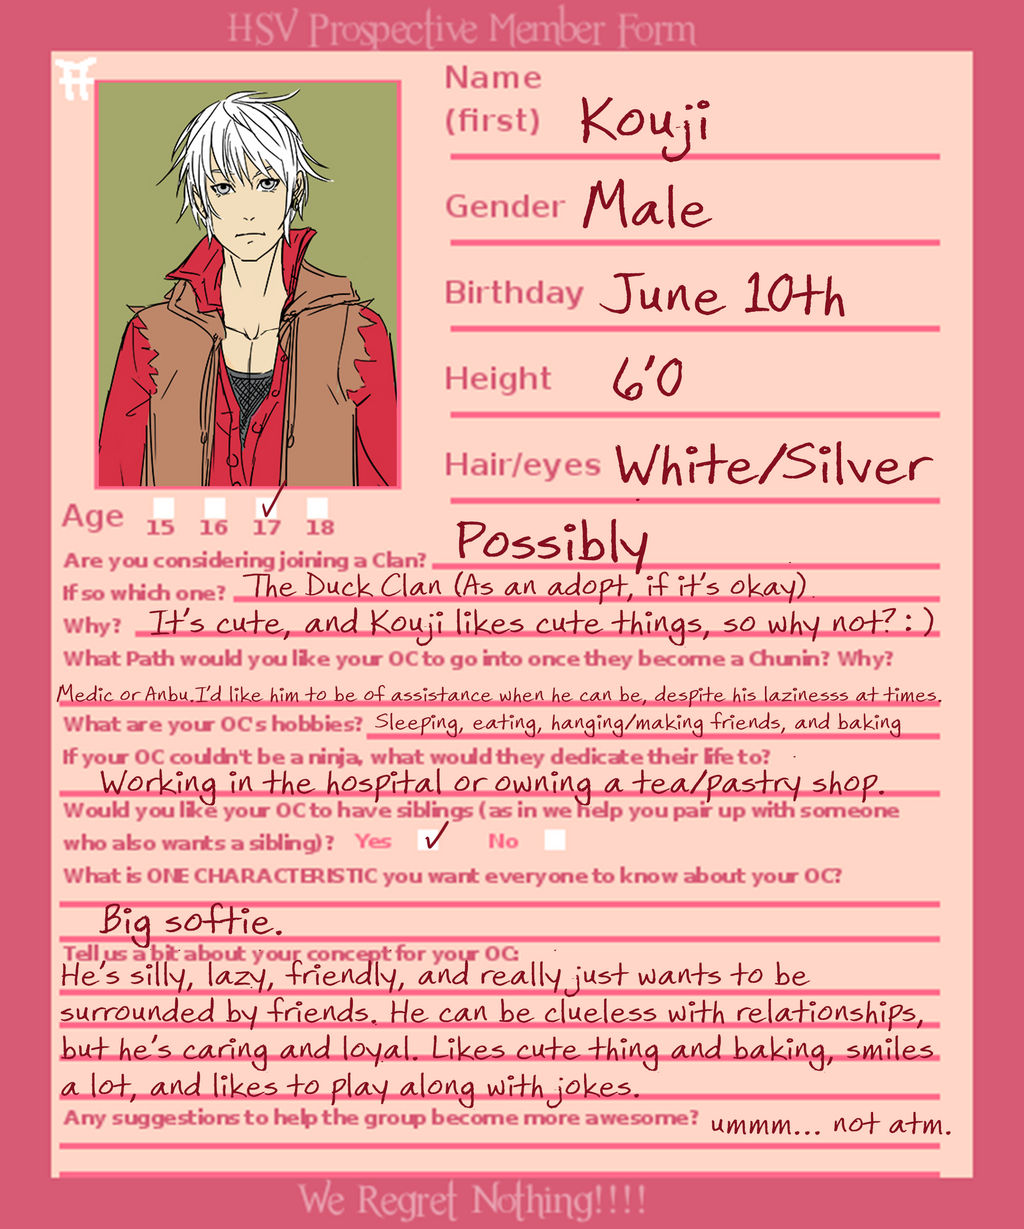 Kouji's HSV Profile Sheet